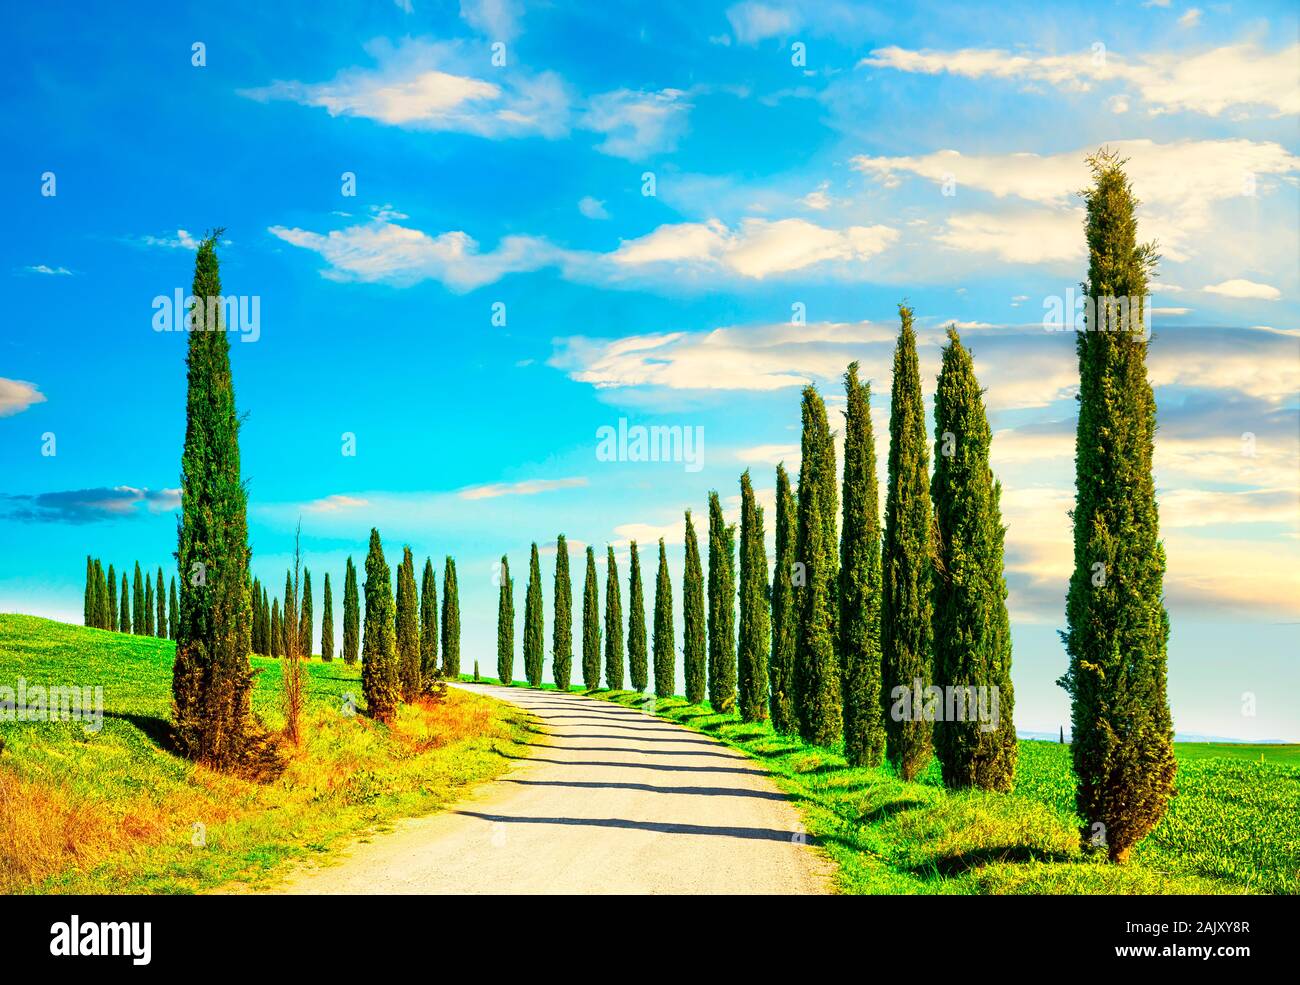 Italian cipressi righe e una strada bianca del paesaggio rurale. Siena, Toscana, Italia, Europa. Foto Stock